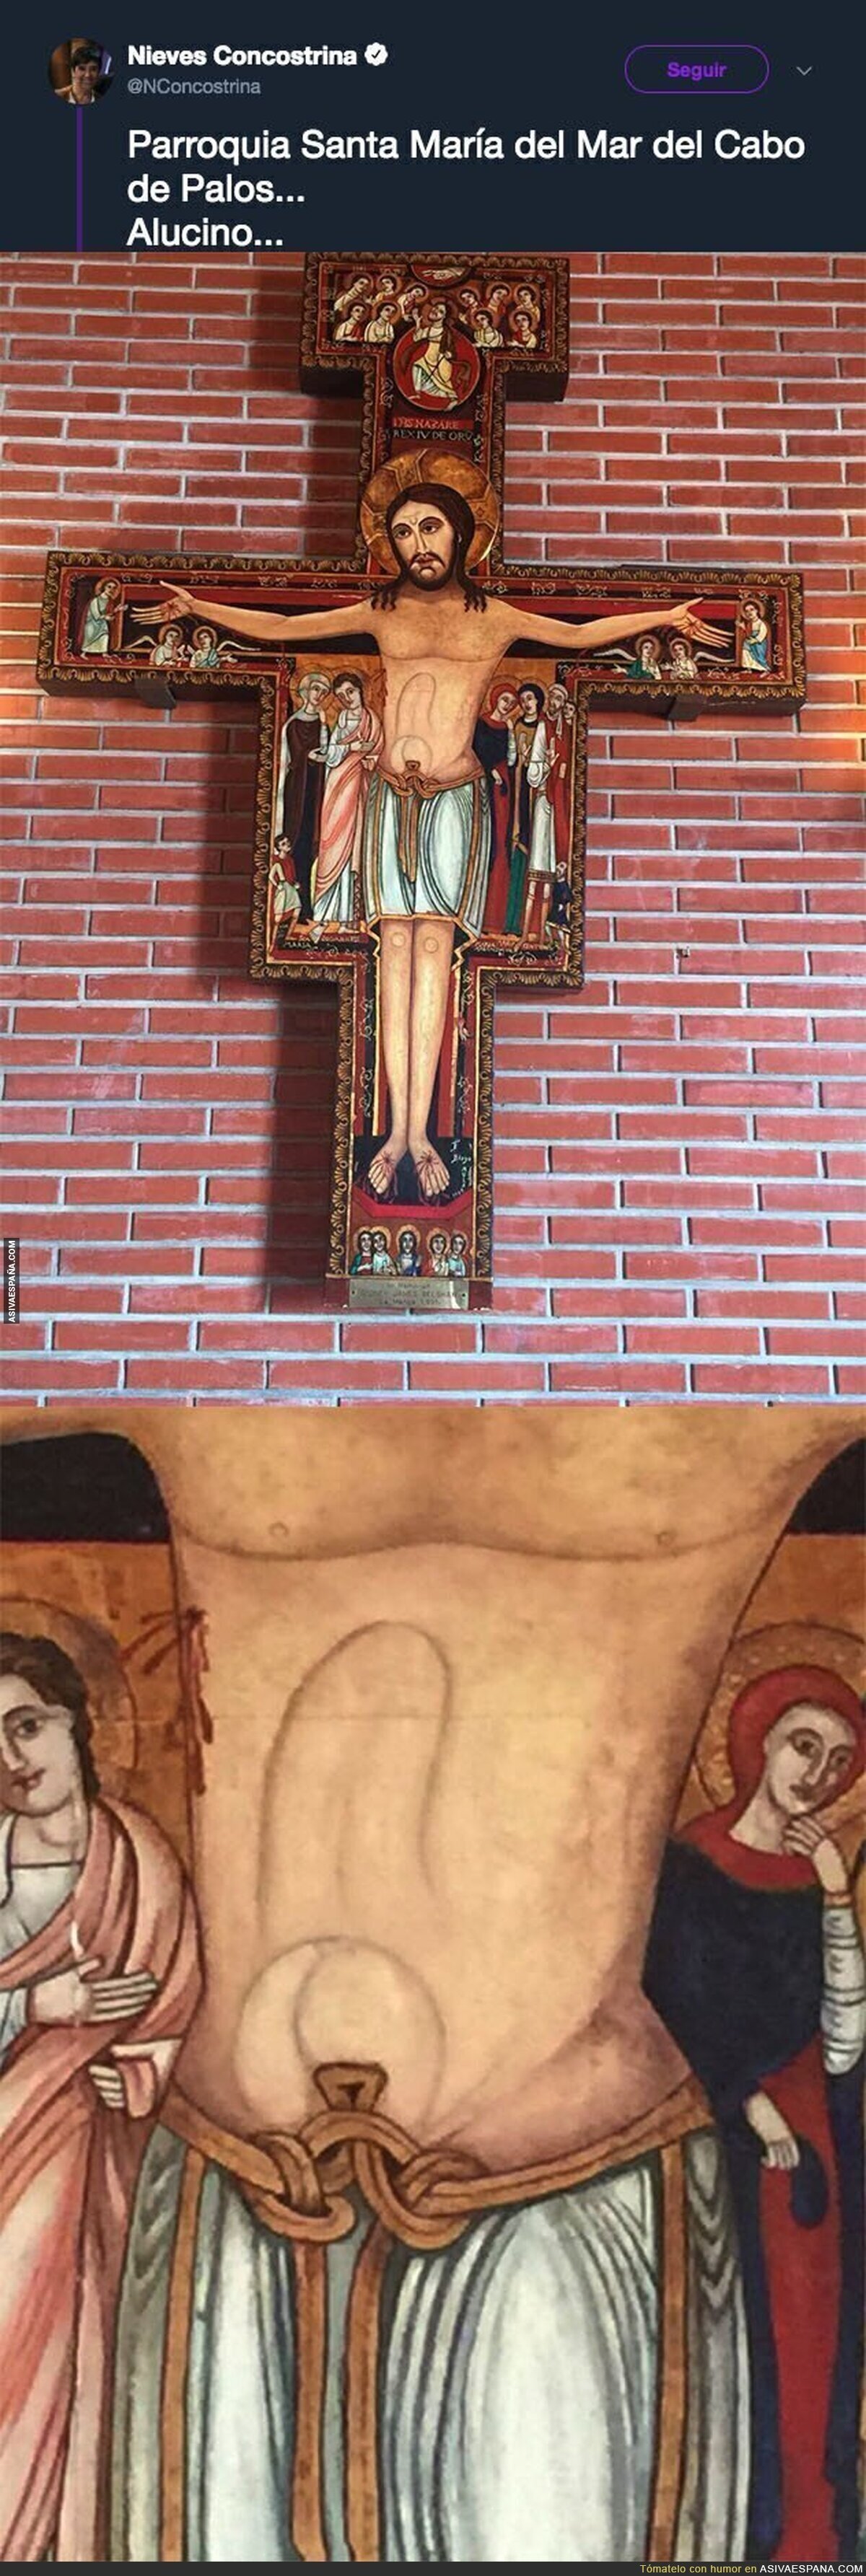 El detalle de los abdominales de este Cristo en la iglesia del Cabo de Palos que está indignando a mucha gente